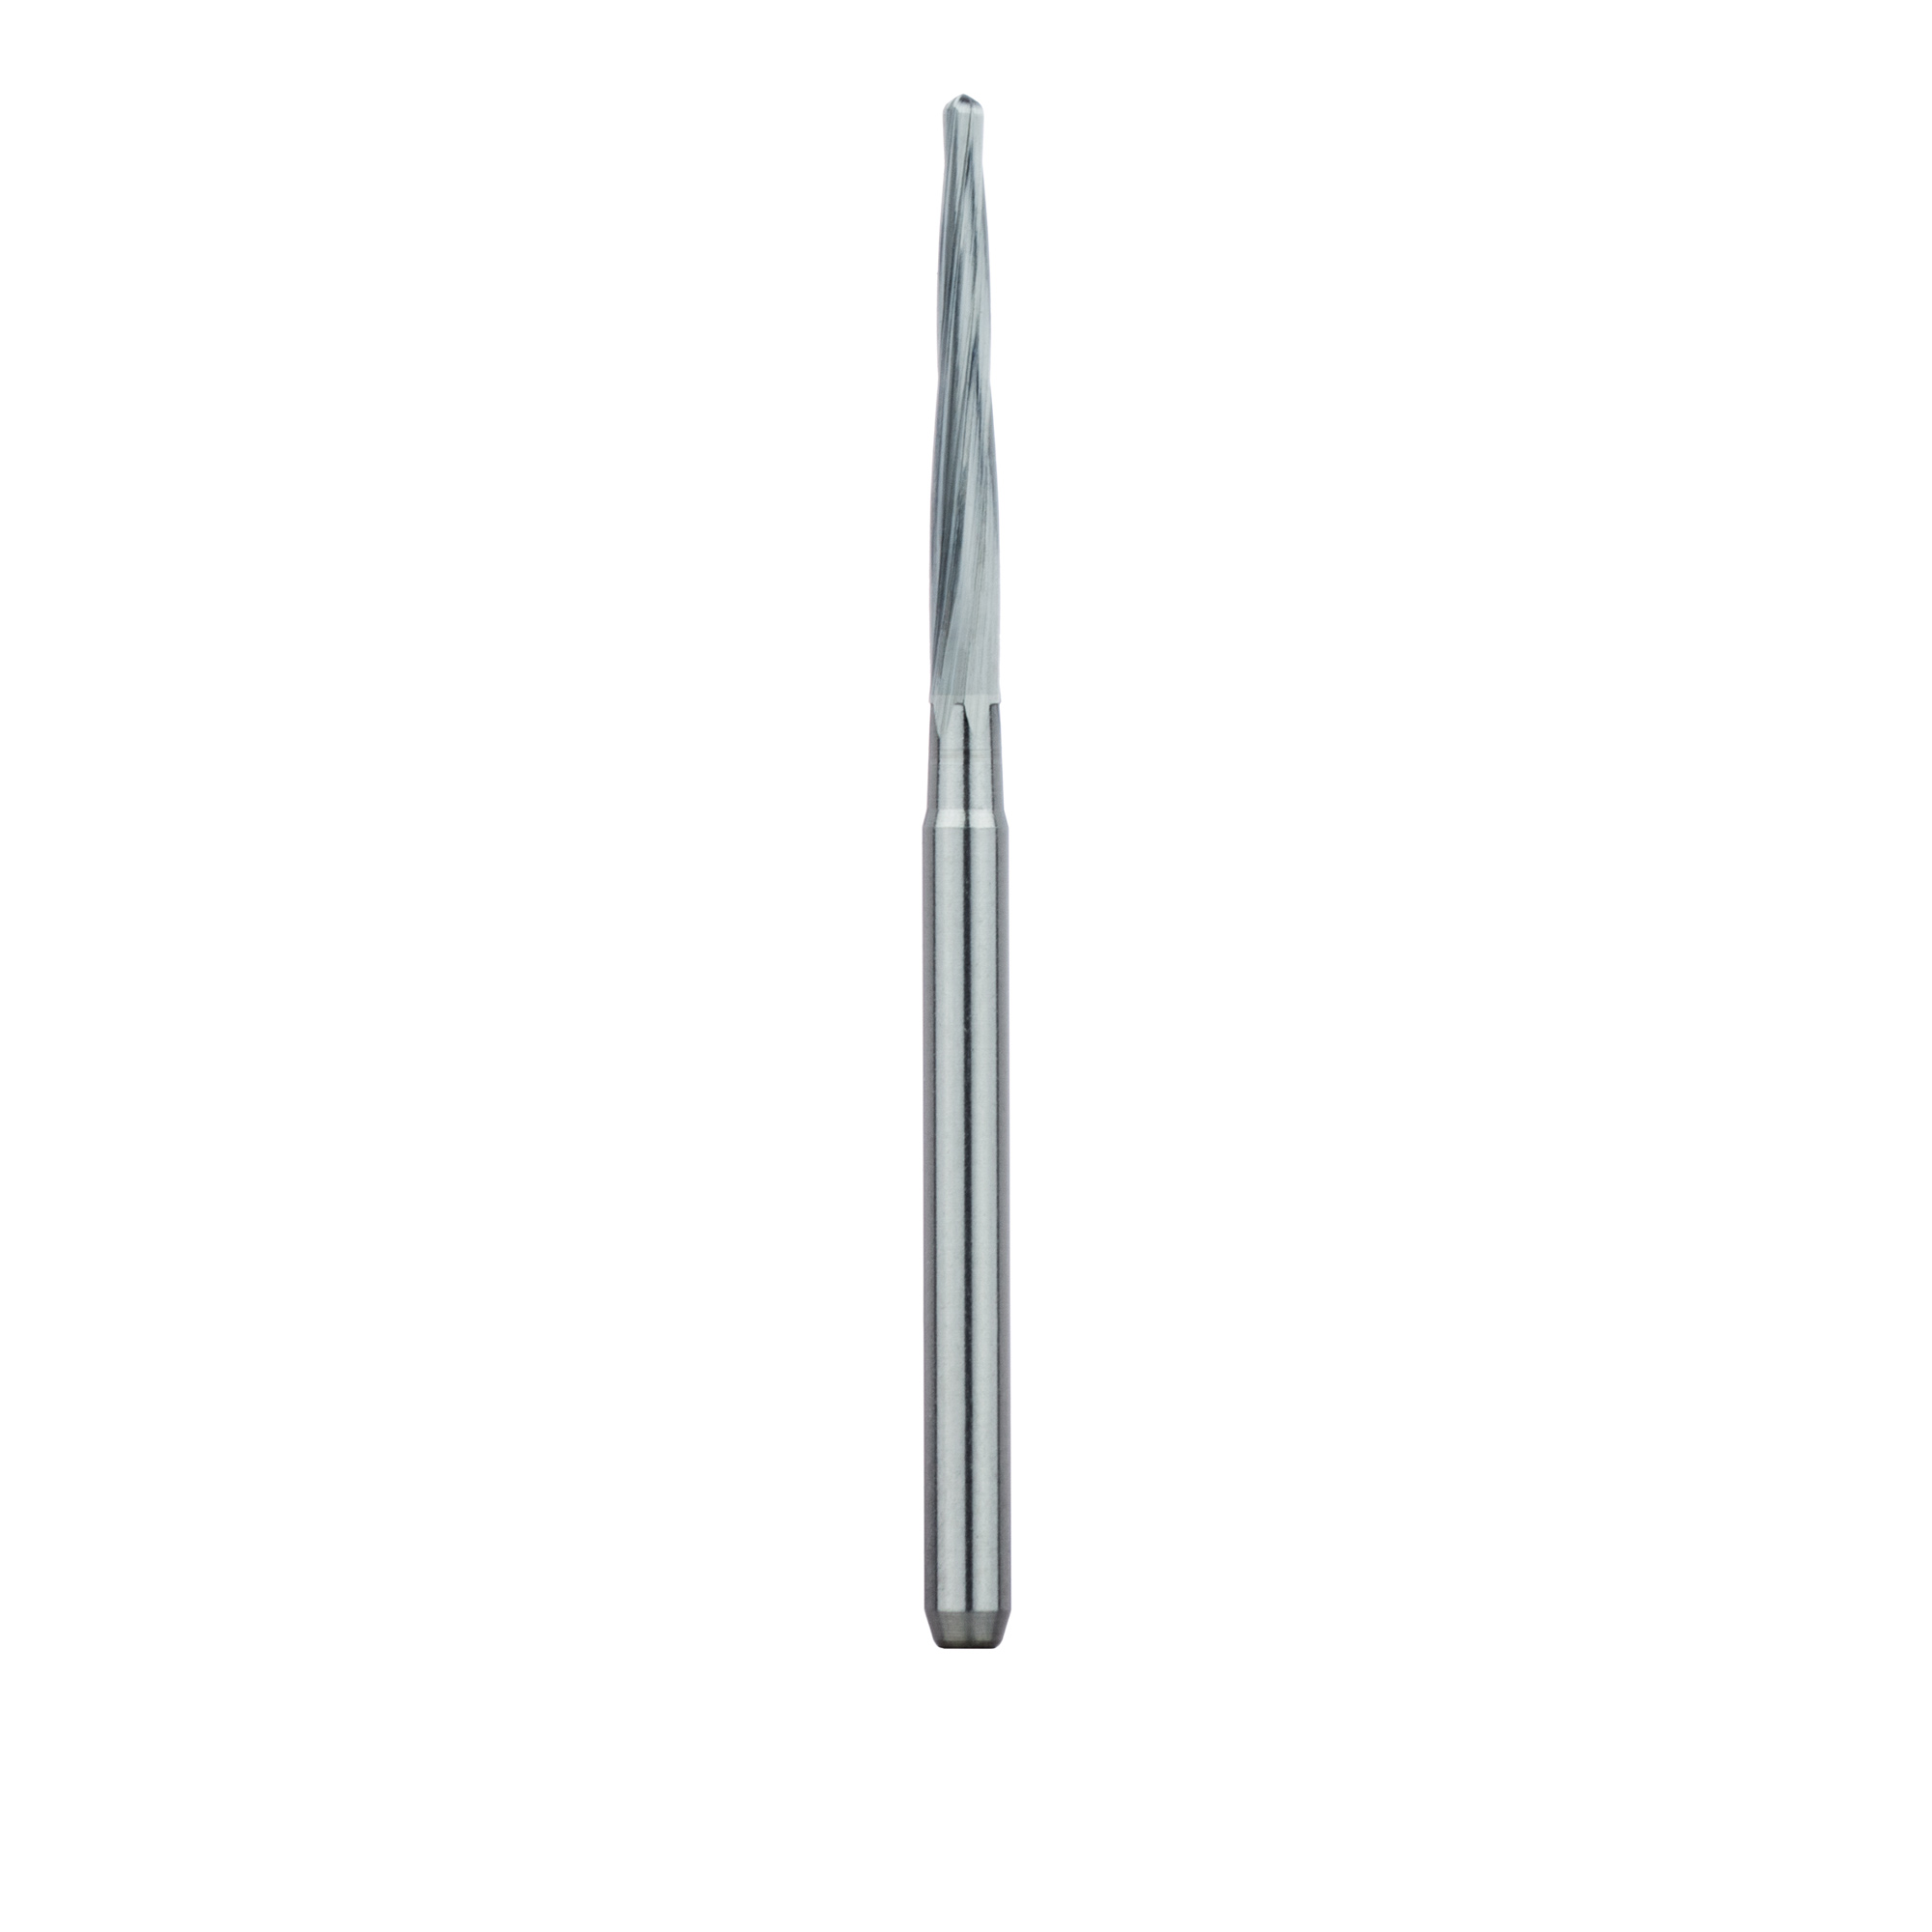 HM152-014-FGL Surgical Lindemann Carbide Bur, Non-Cross Cut, 1.4mm Ø, FGL